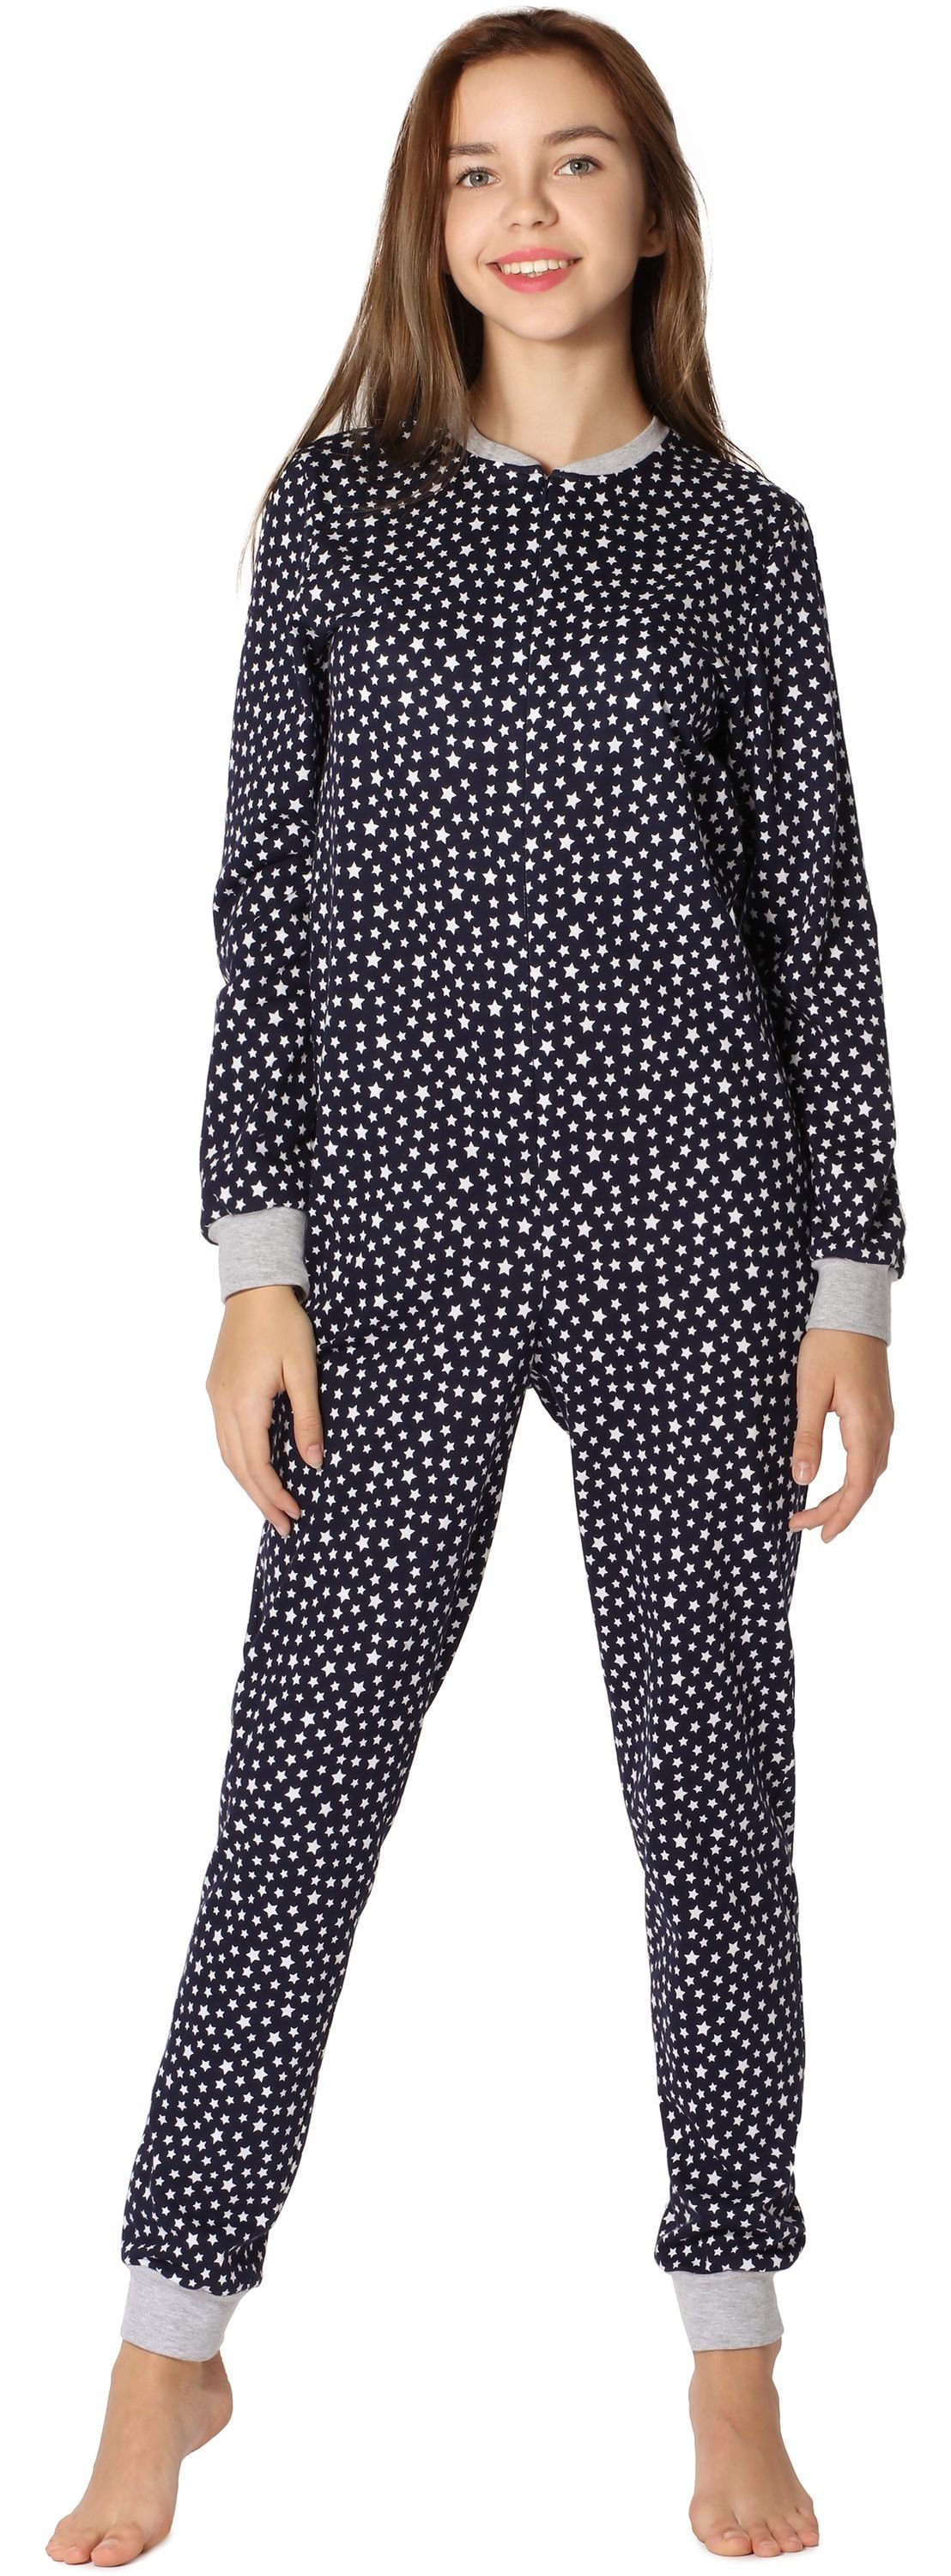 MS10-235 Schlafanzug Marineblau/Sterne Mädchen Schlafanzug Merry Jugend Style Schlafoverall